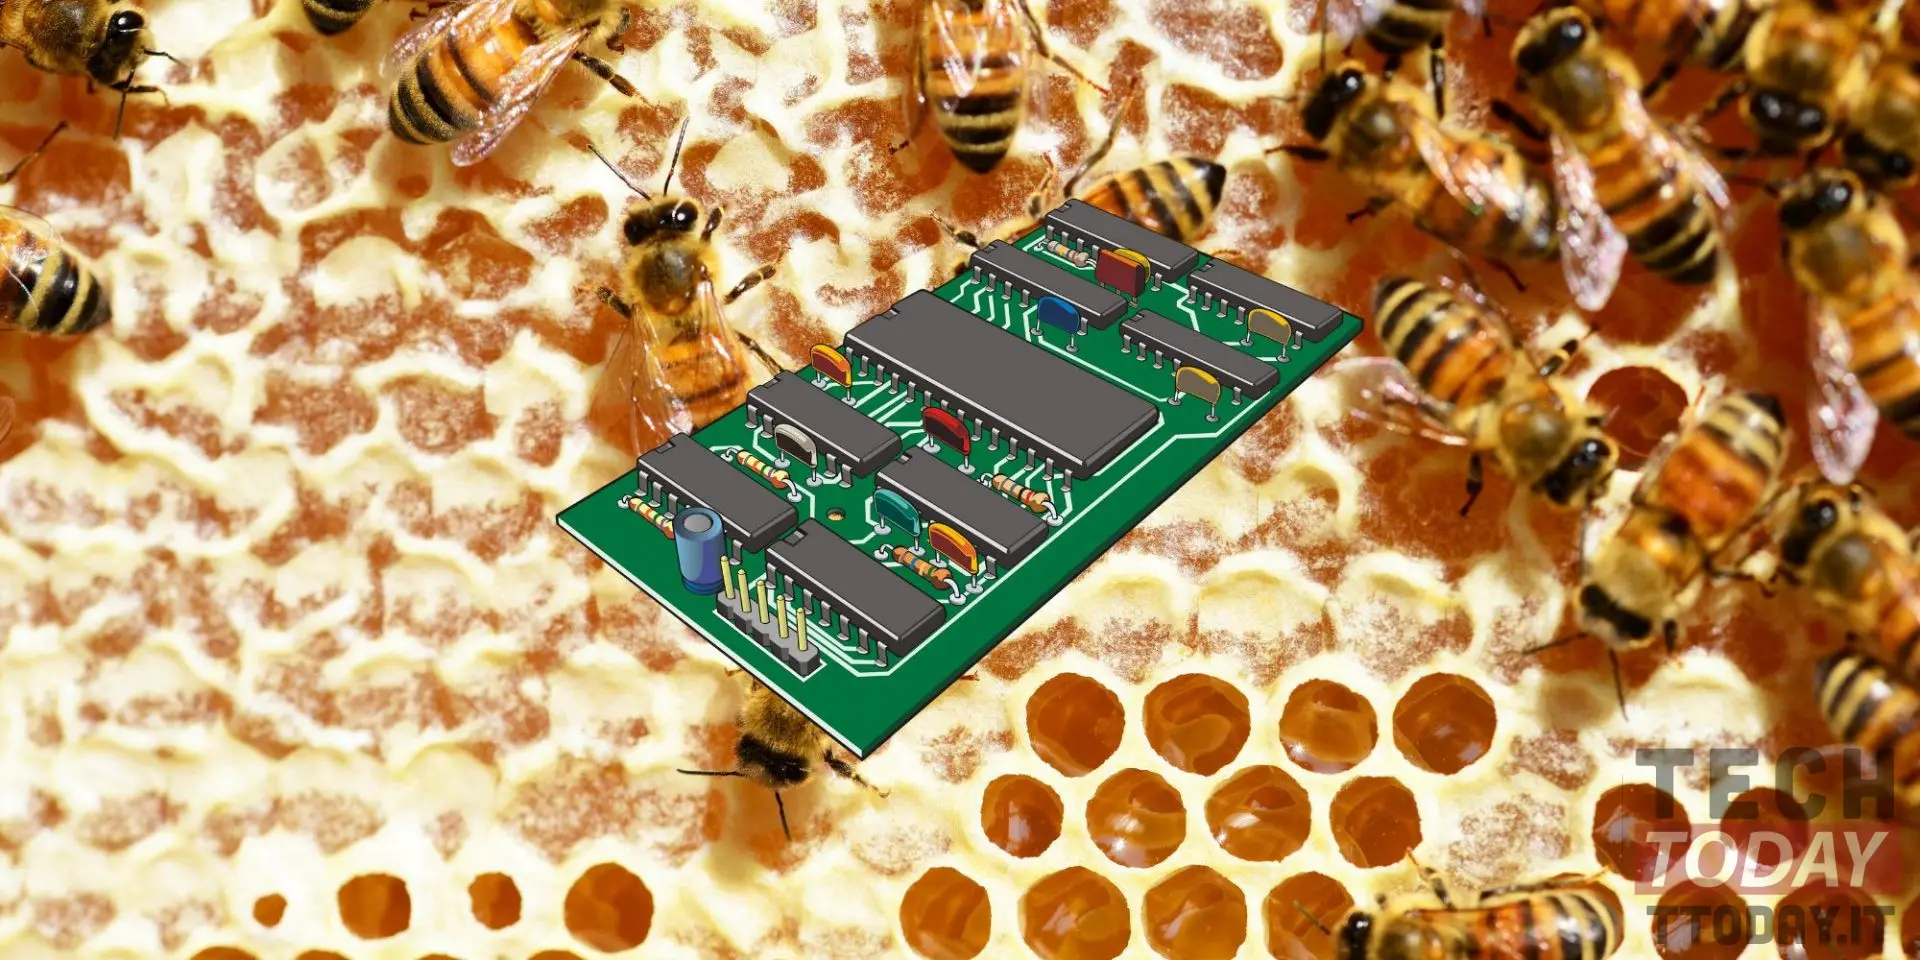 τσιπ υπολογιστών που δημιουργήθηκαν από μέλι